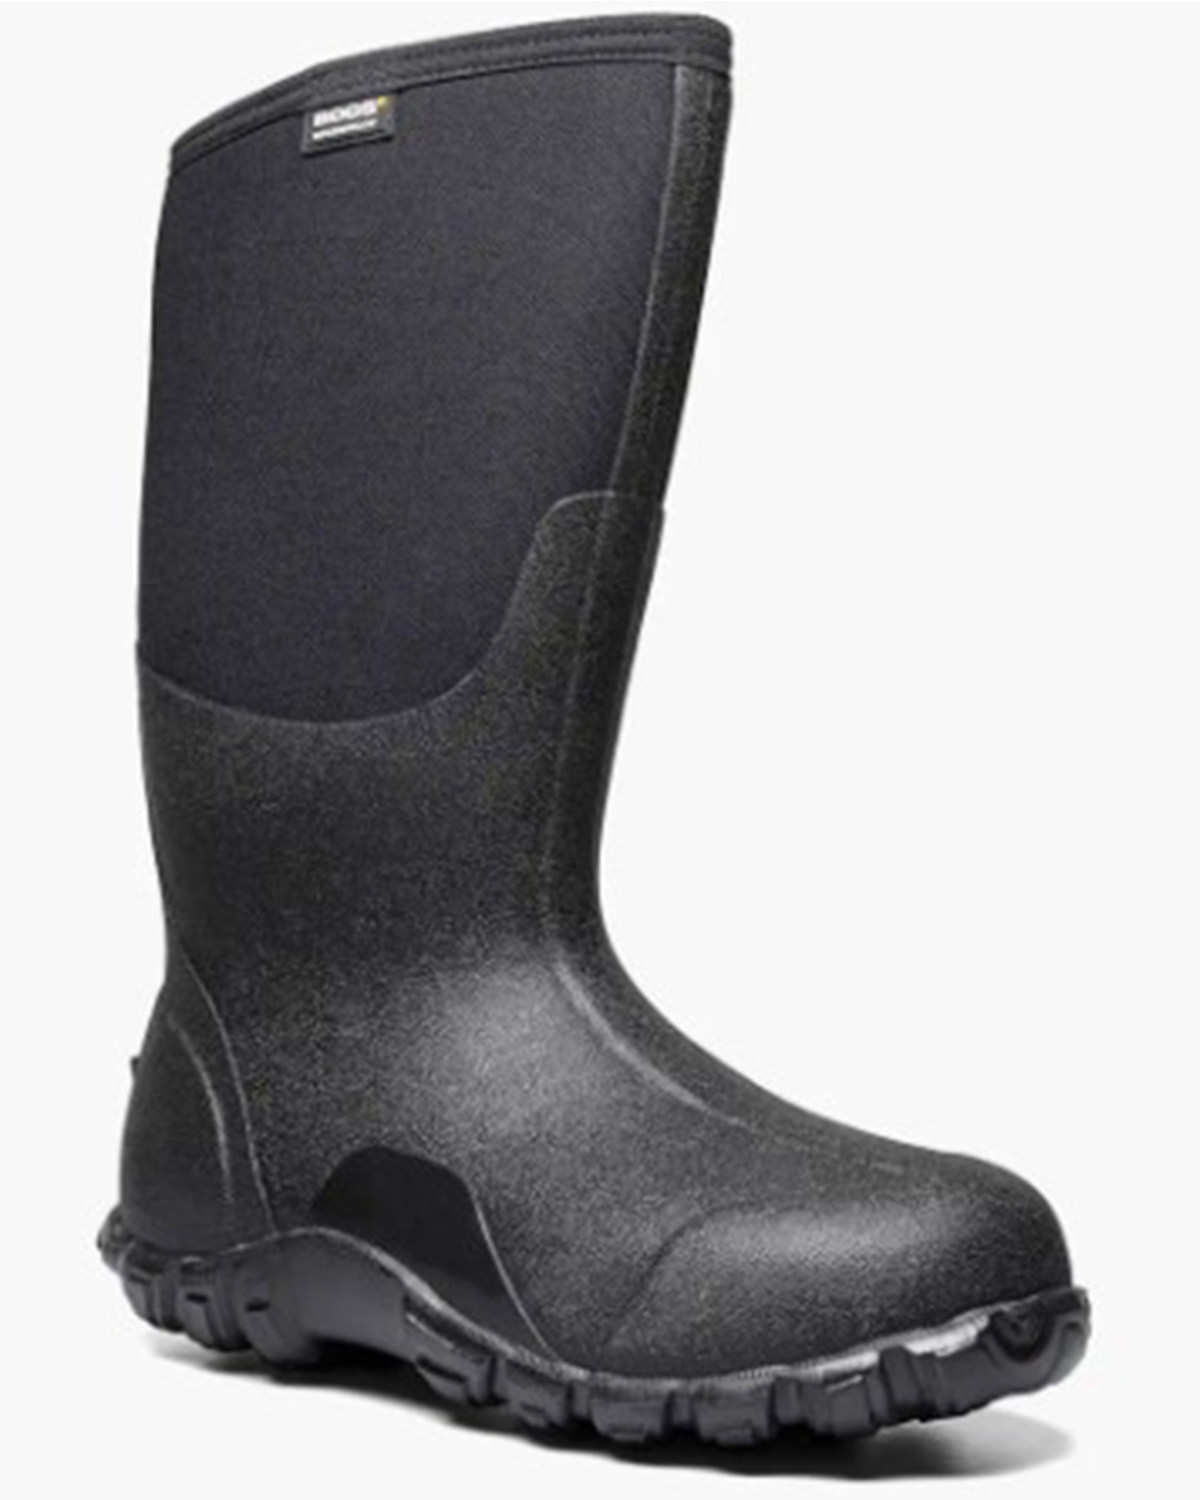 Bogs Men's Classic High Waterproof Boots